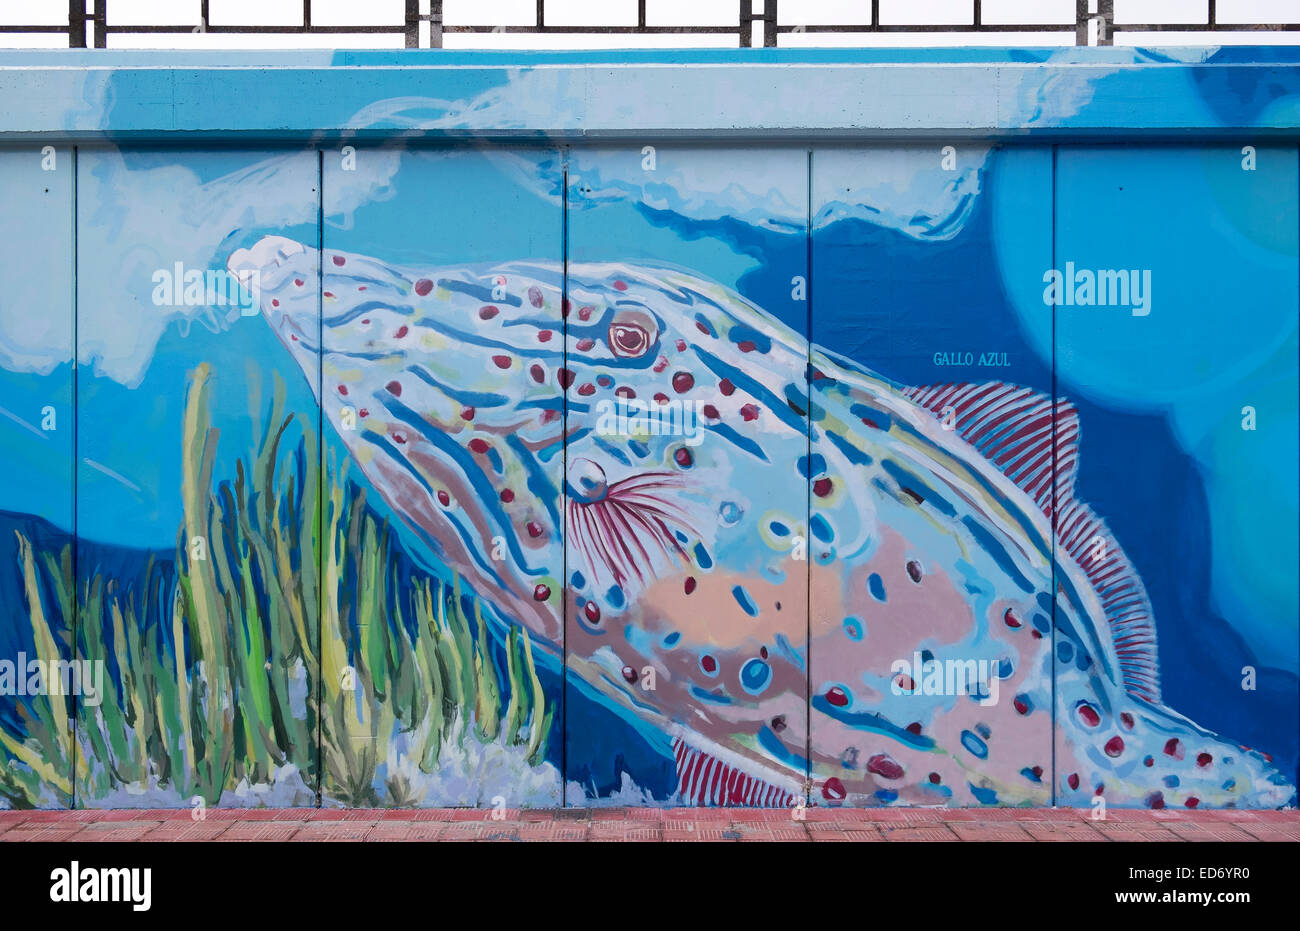 Hafenmauer mit Bildern von Meerestieren, Los Cristianos, Teneriffa, Kanarische Inseln, Spanien Stockfoto